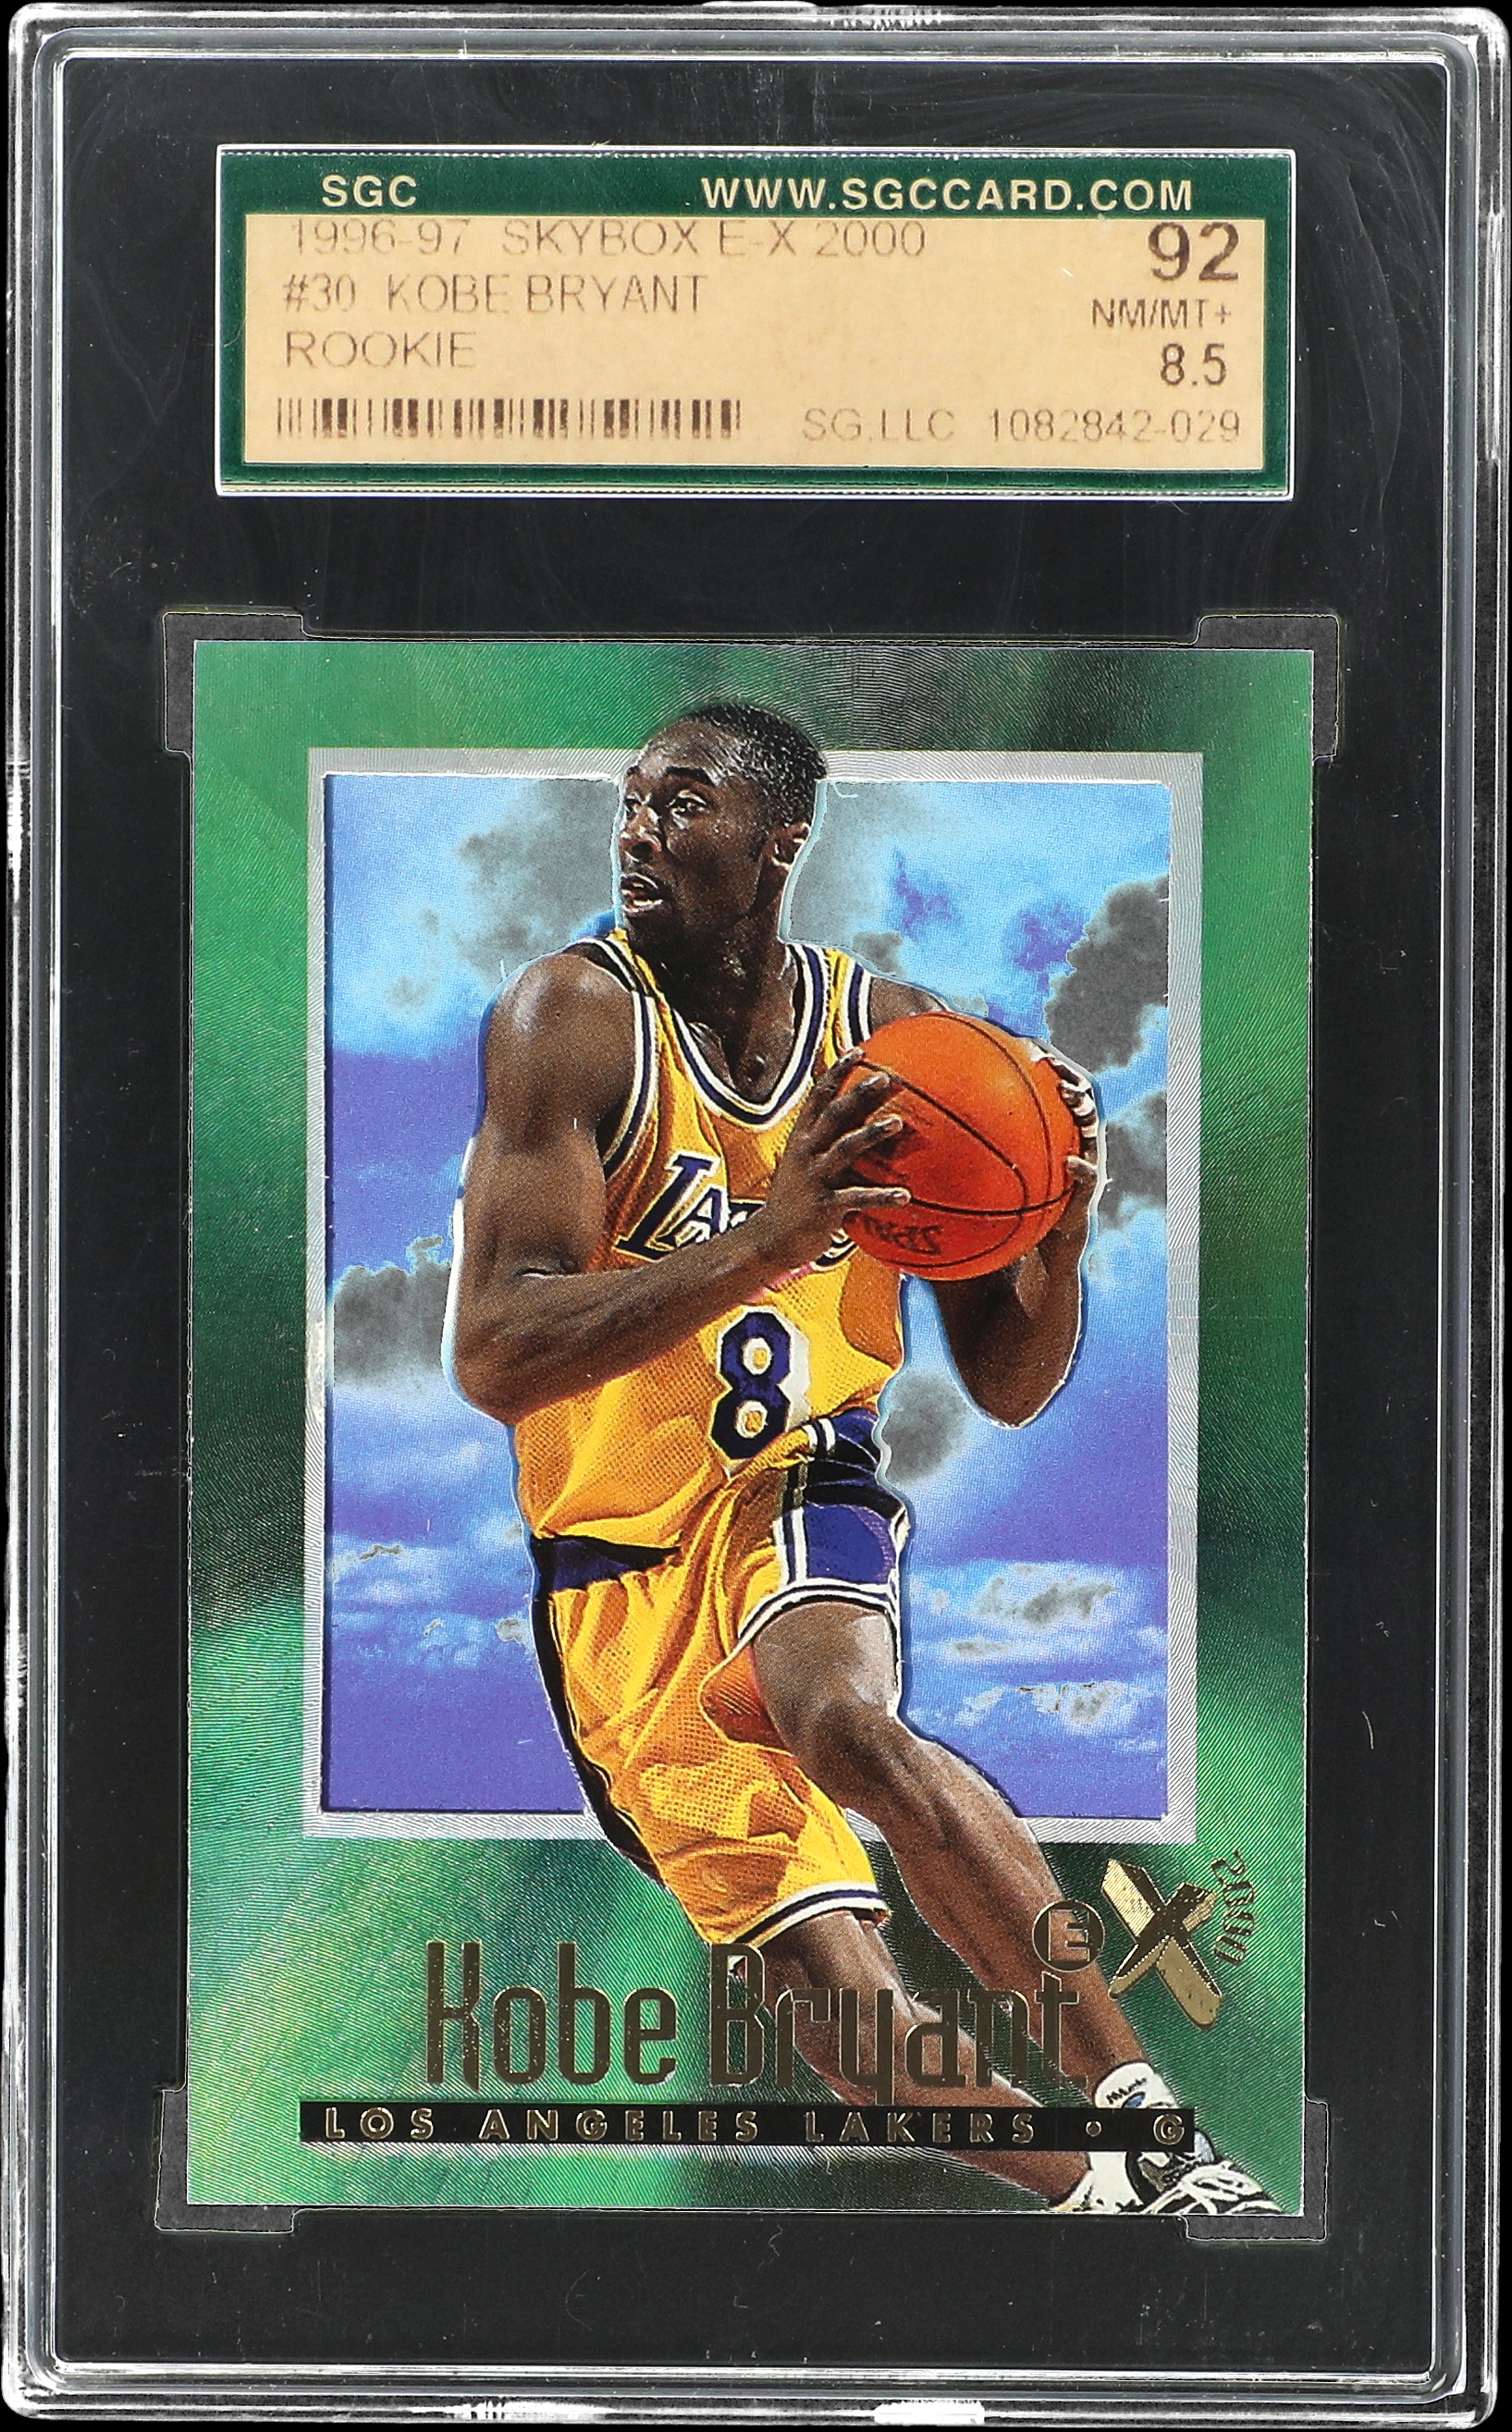 1996-97 SkyBox E-X2000 #30 Kobe Bryant Rookie Card – SGC NM-MT+ 8.5